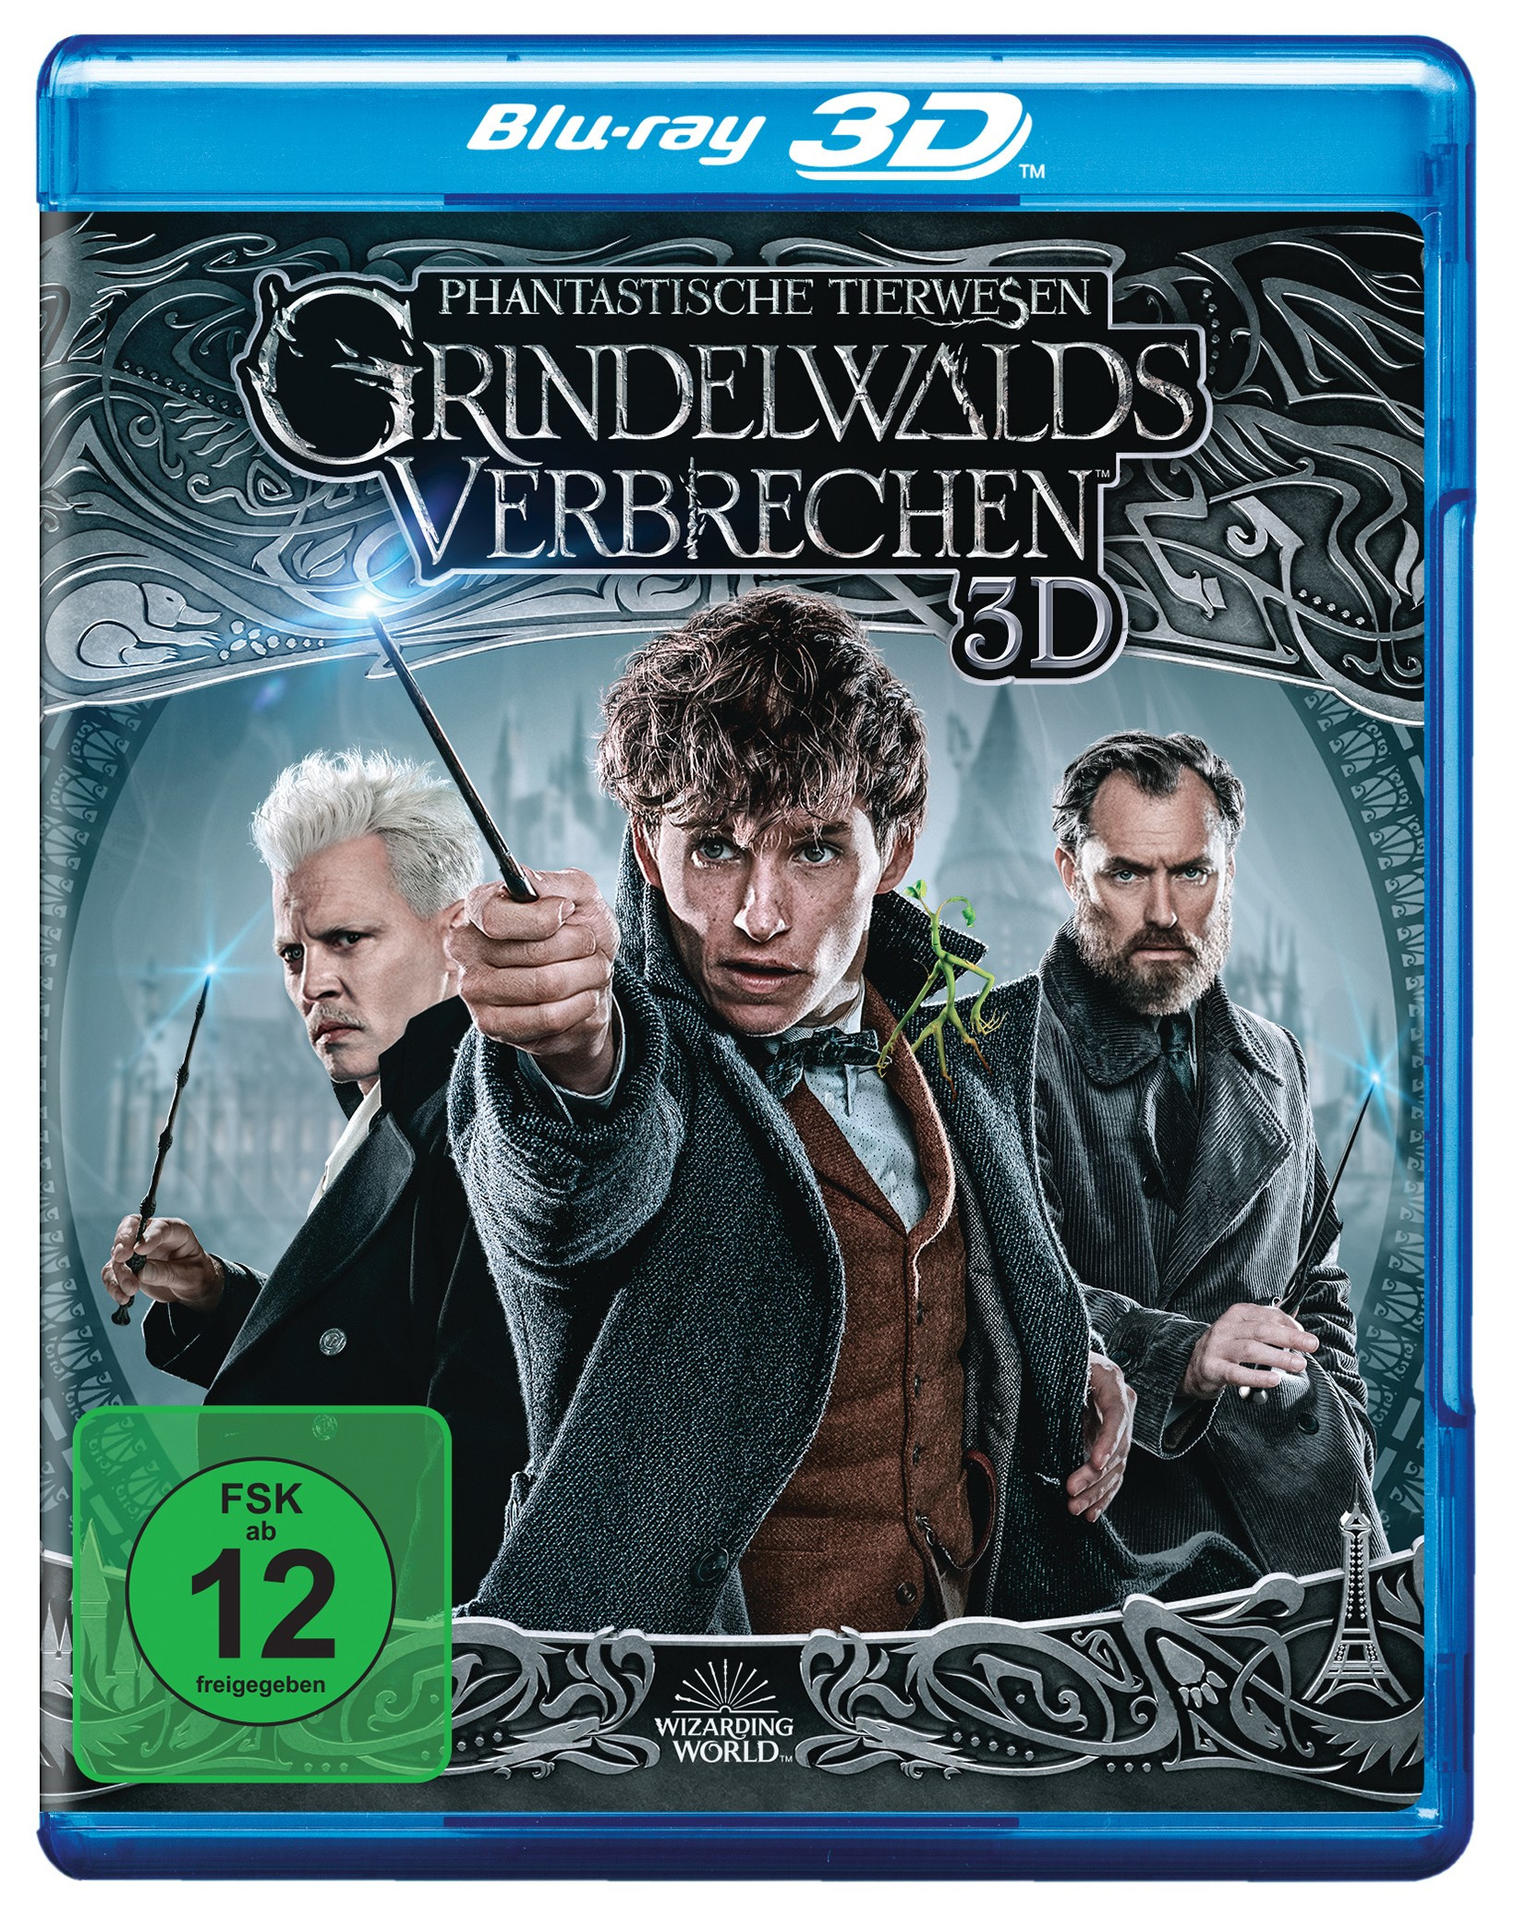 Phantastische Tierwesen Grindelwalds Kinofassung Blu-ray Verbrechen + Cut Extended 3D